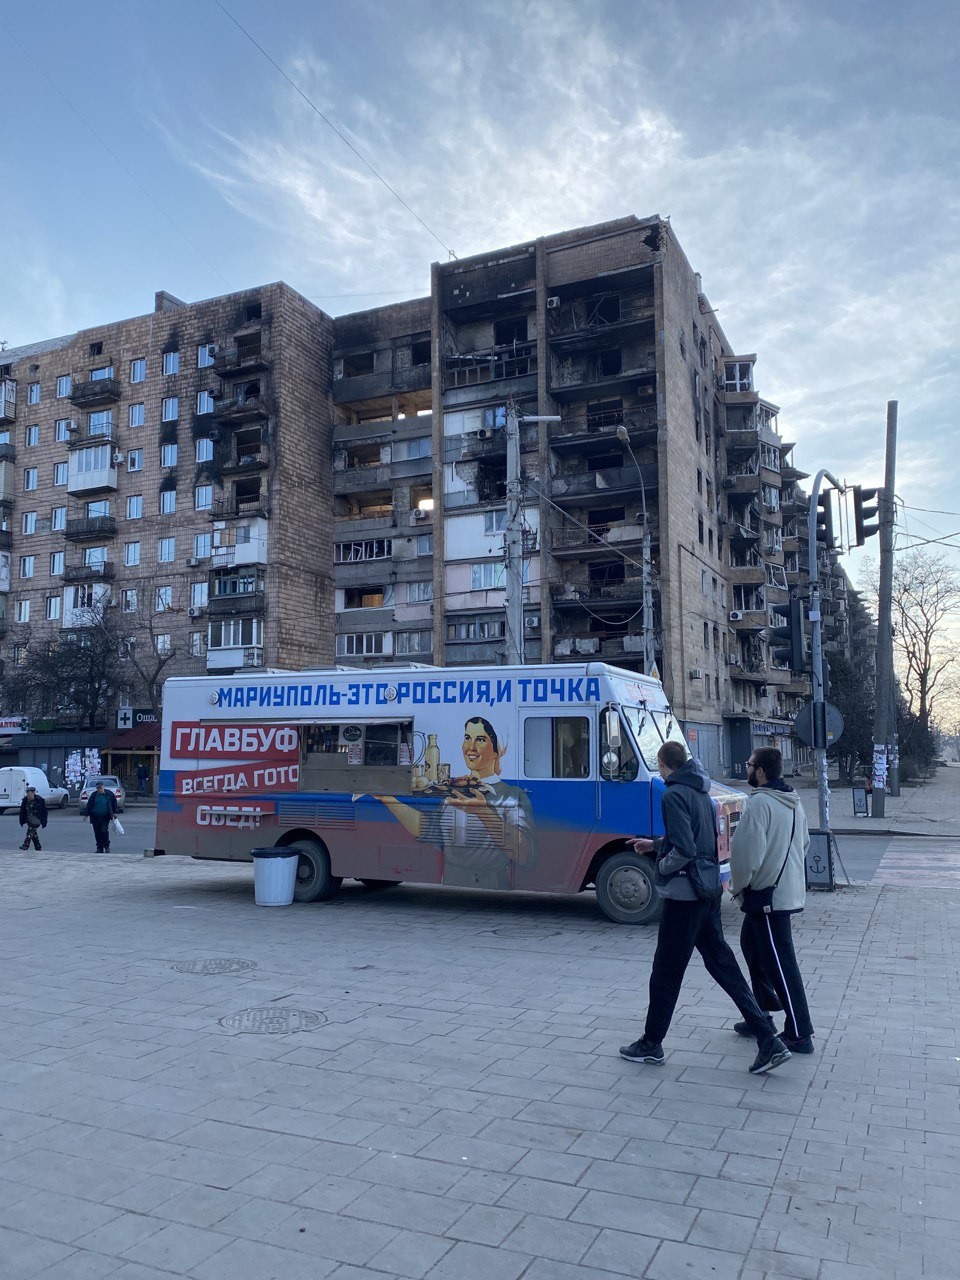 Propaganda russa diz como é grandioso fazer parte da Rússia. Ao fundo, um prédio destruído por bombardeios — Foto: Ekaterina Diachkova/Agência O Globo